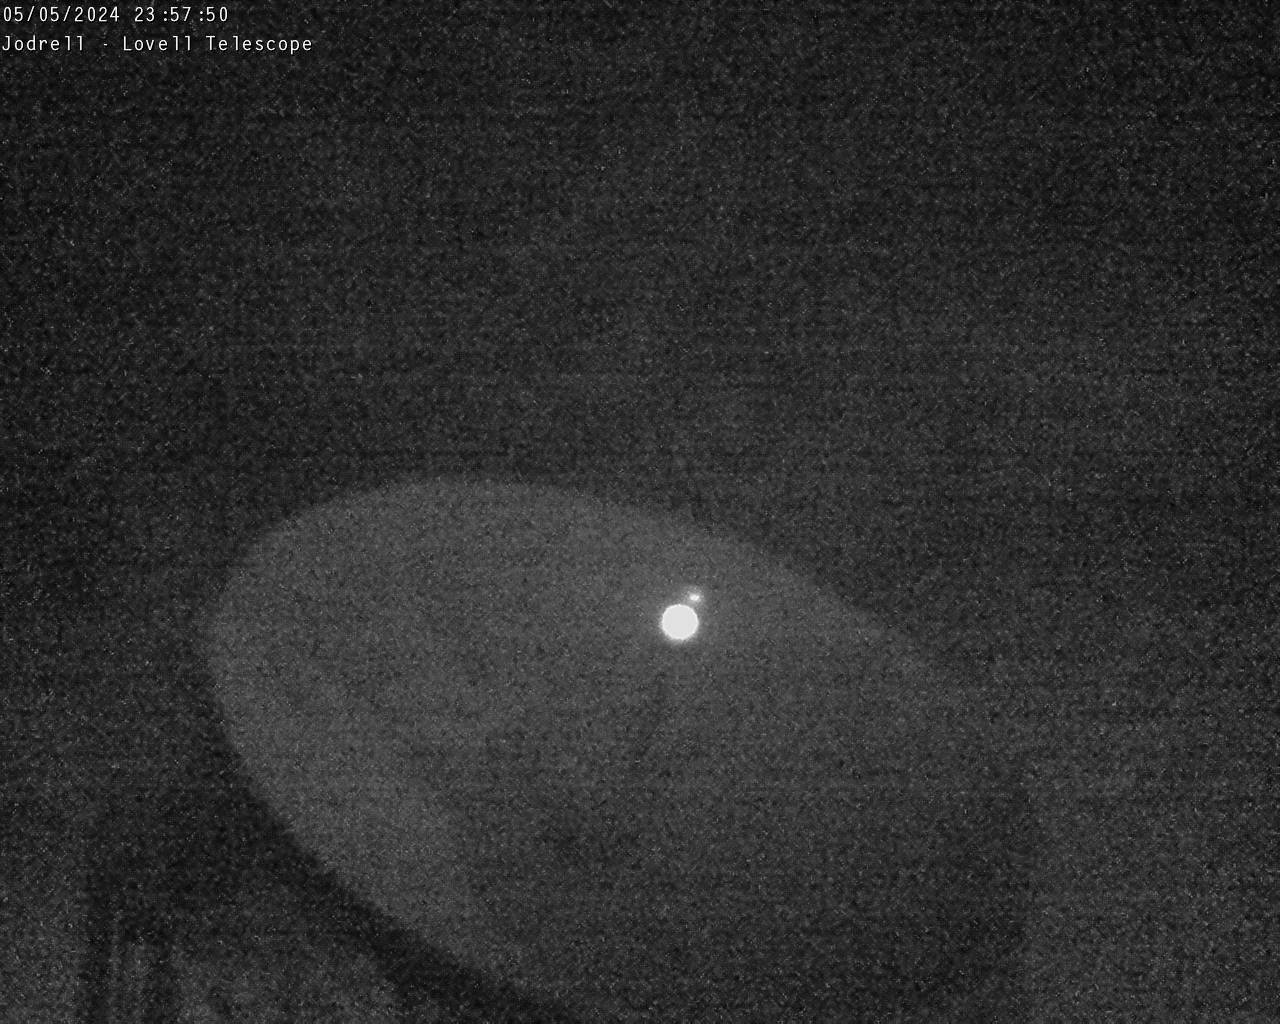 Lovell Telescope webcam